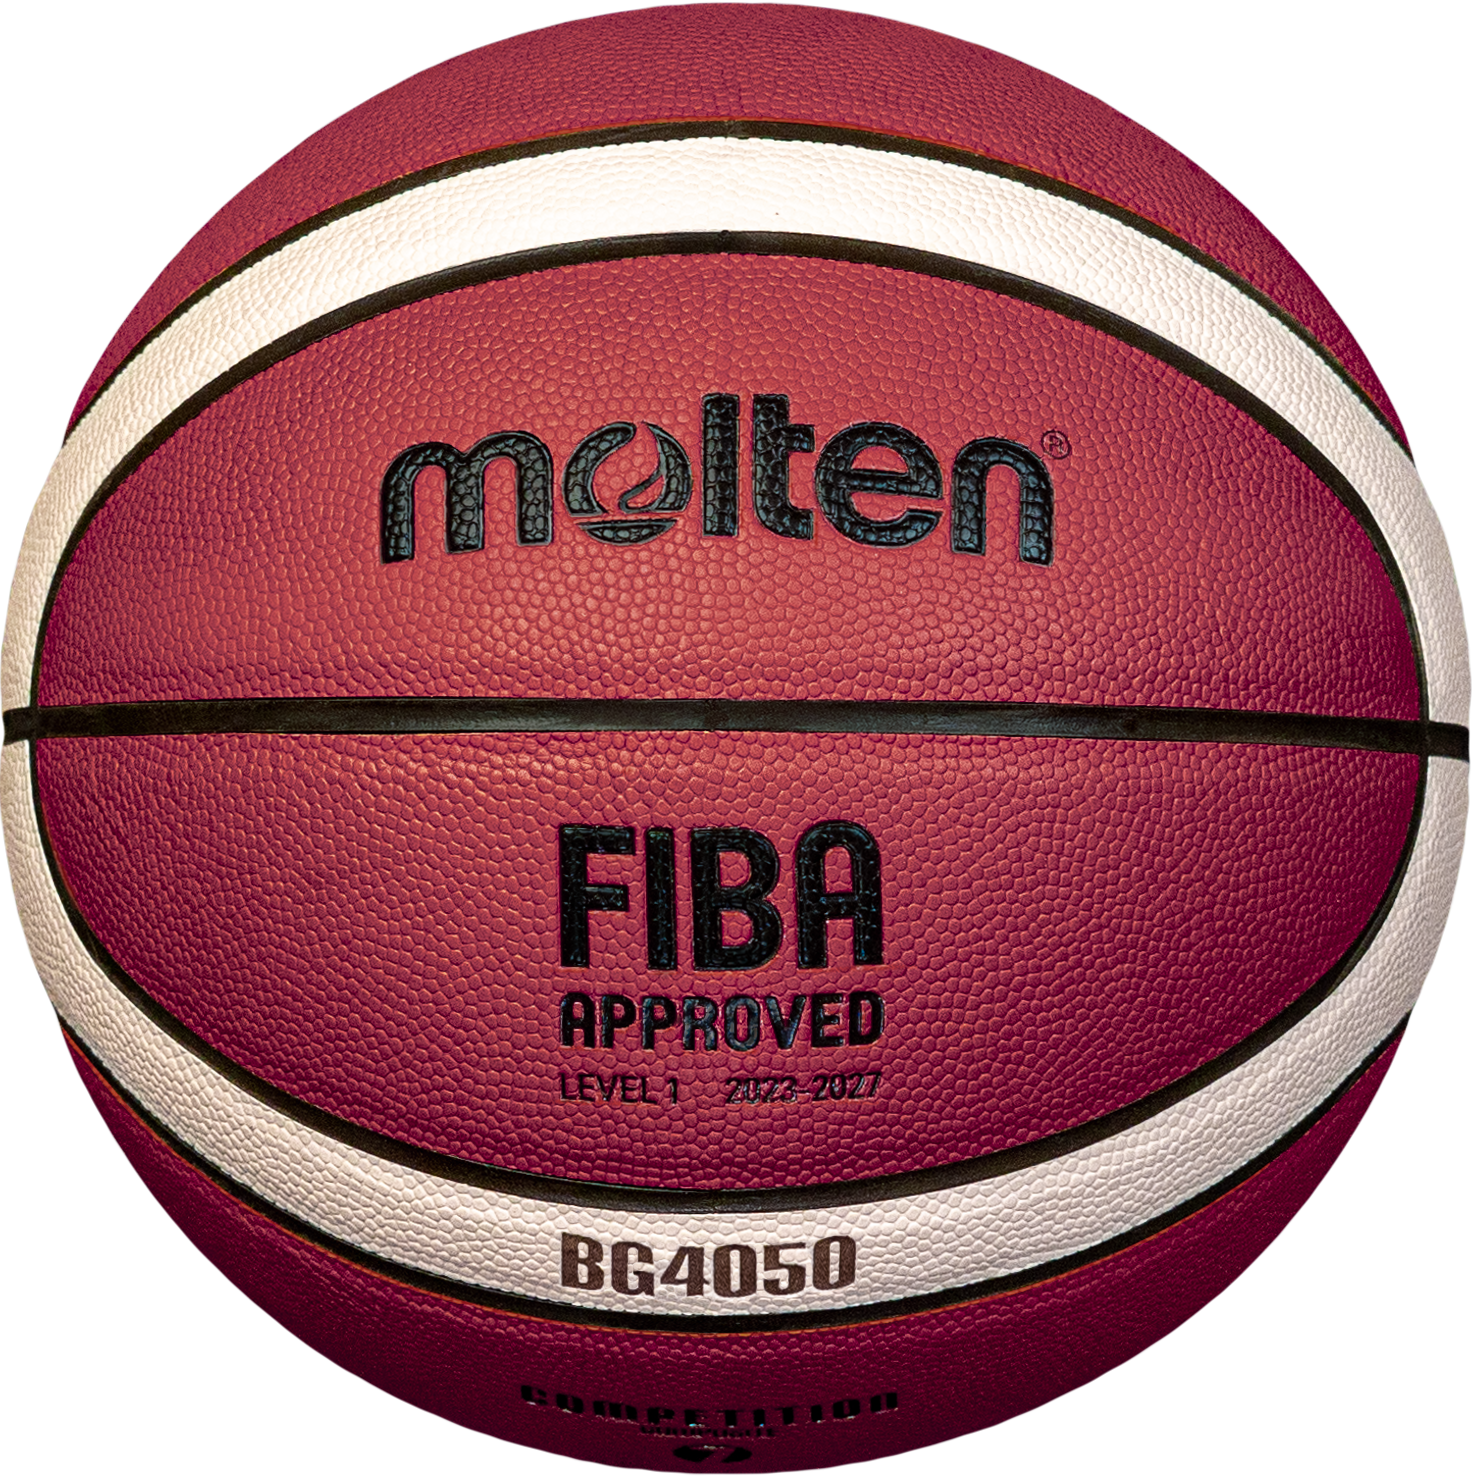 Molten Basketball B7G4050